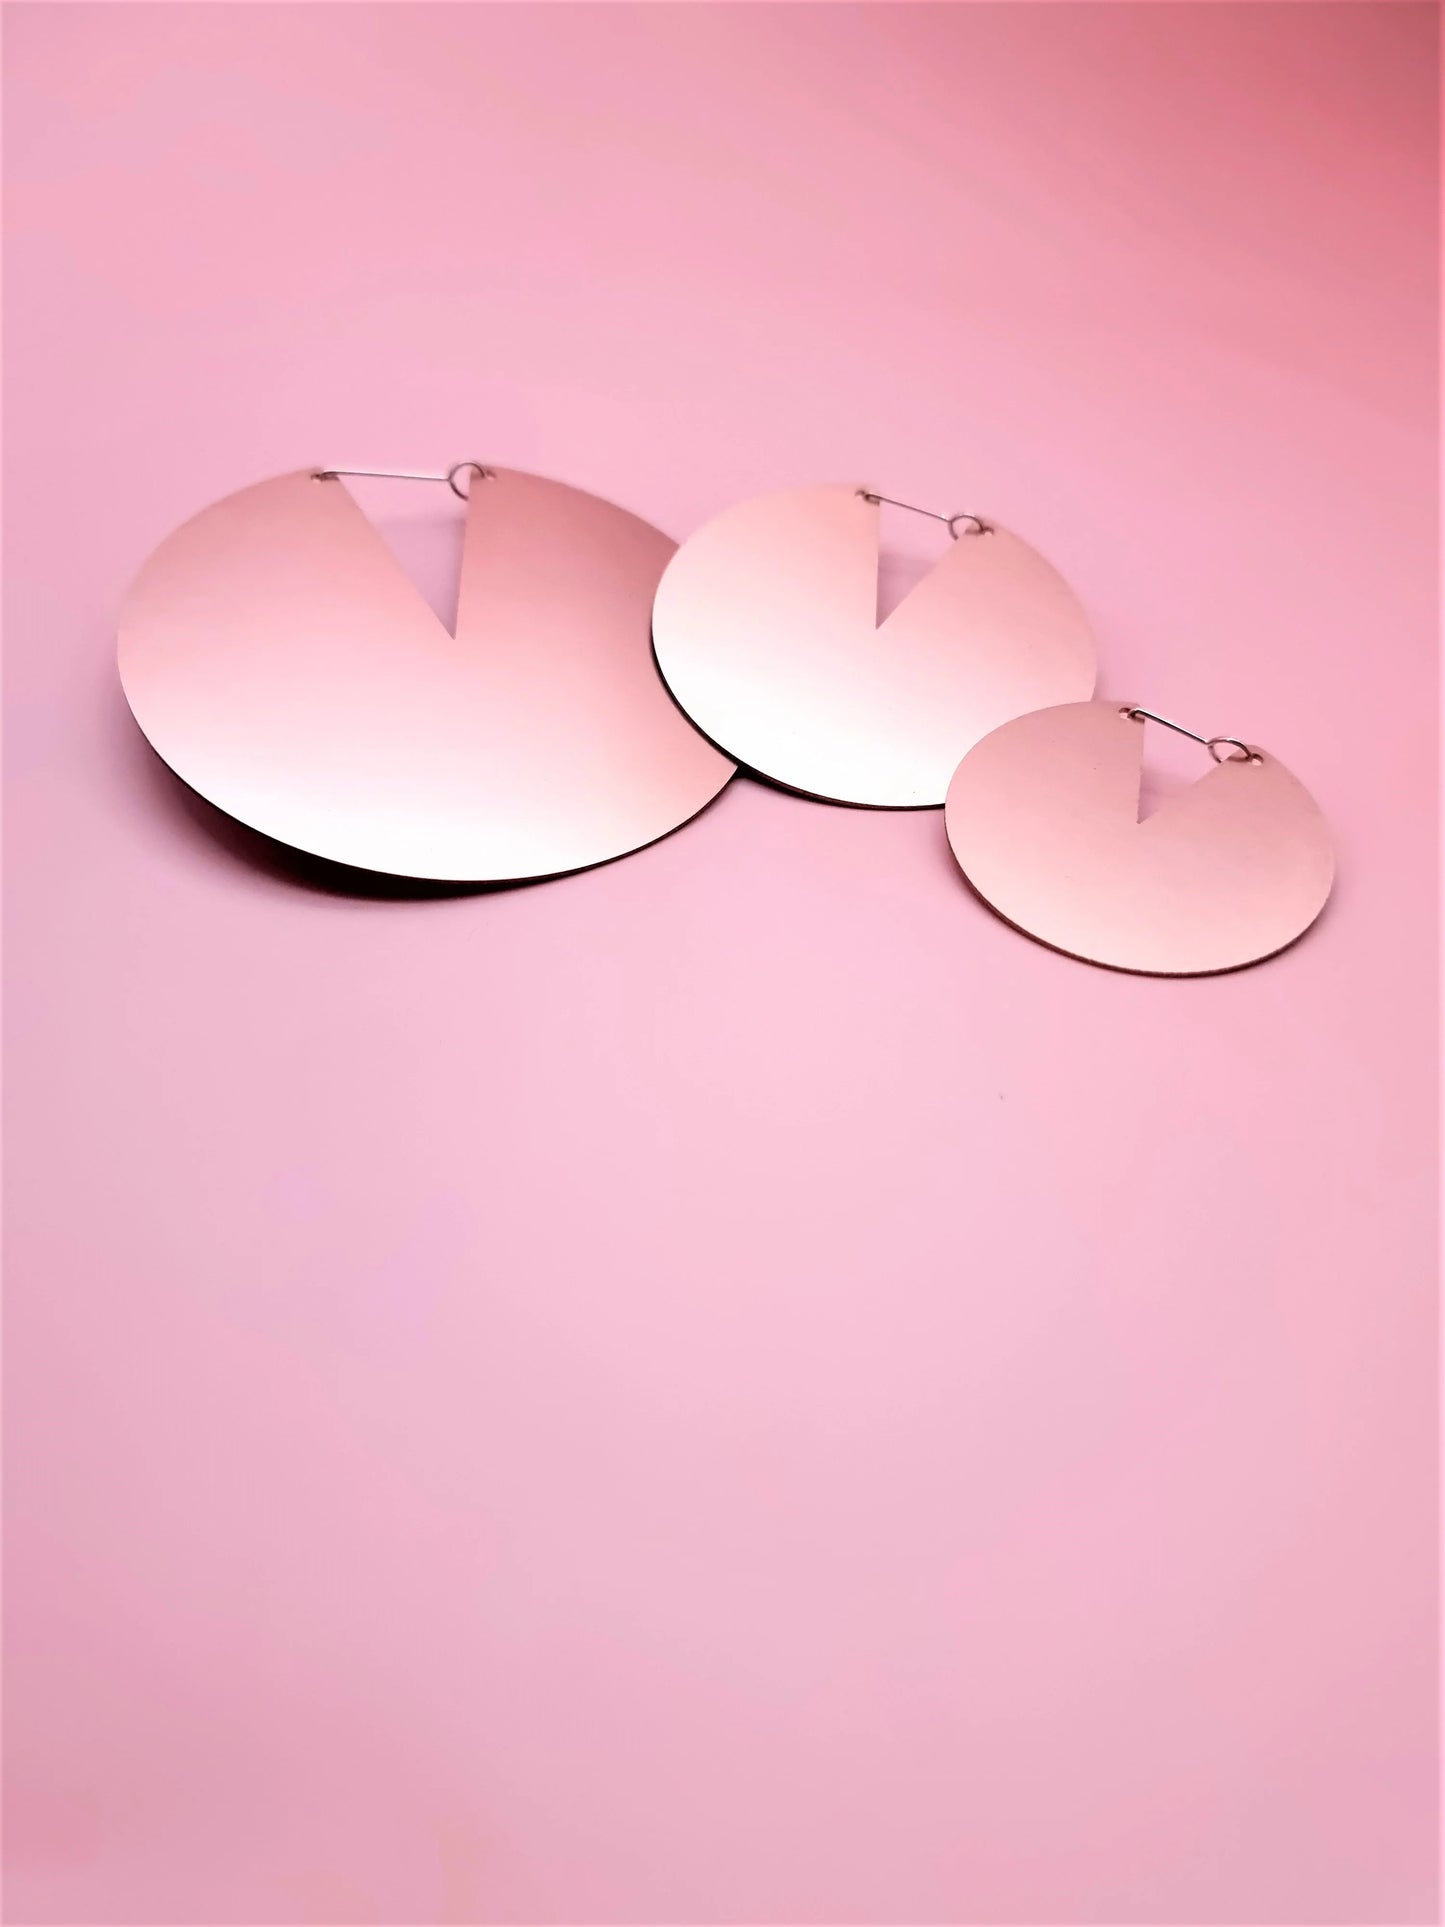 
                  
                    Metallic Pink Disc Earrings by BLACBRAIL
                  
                